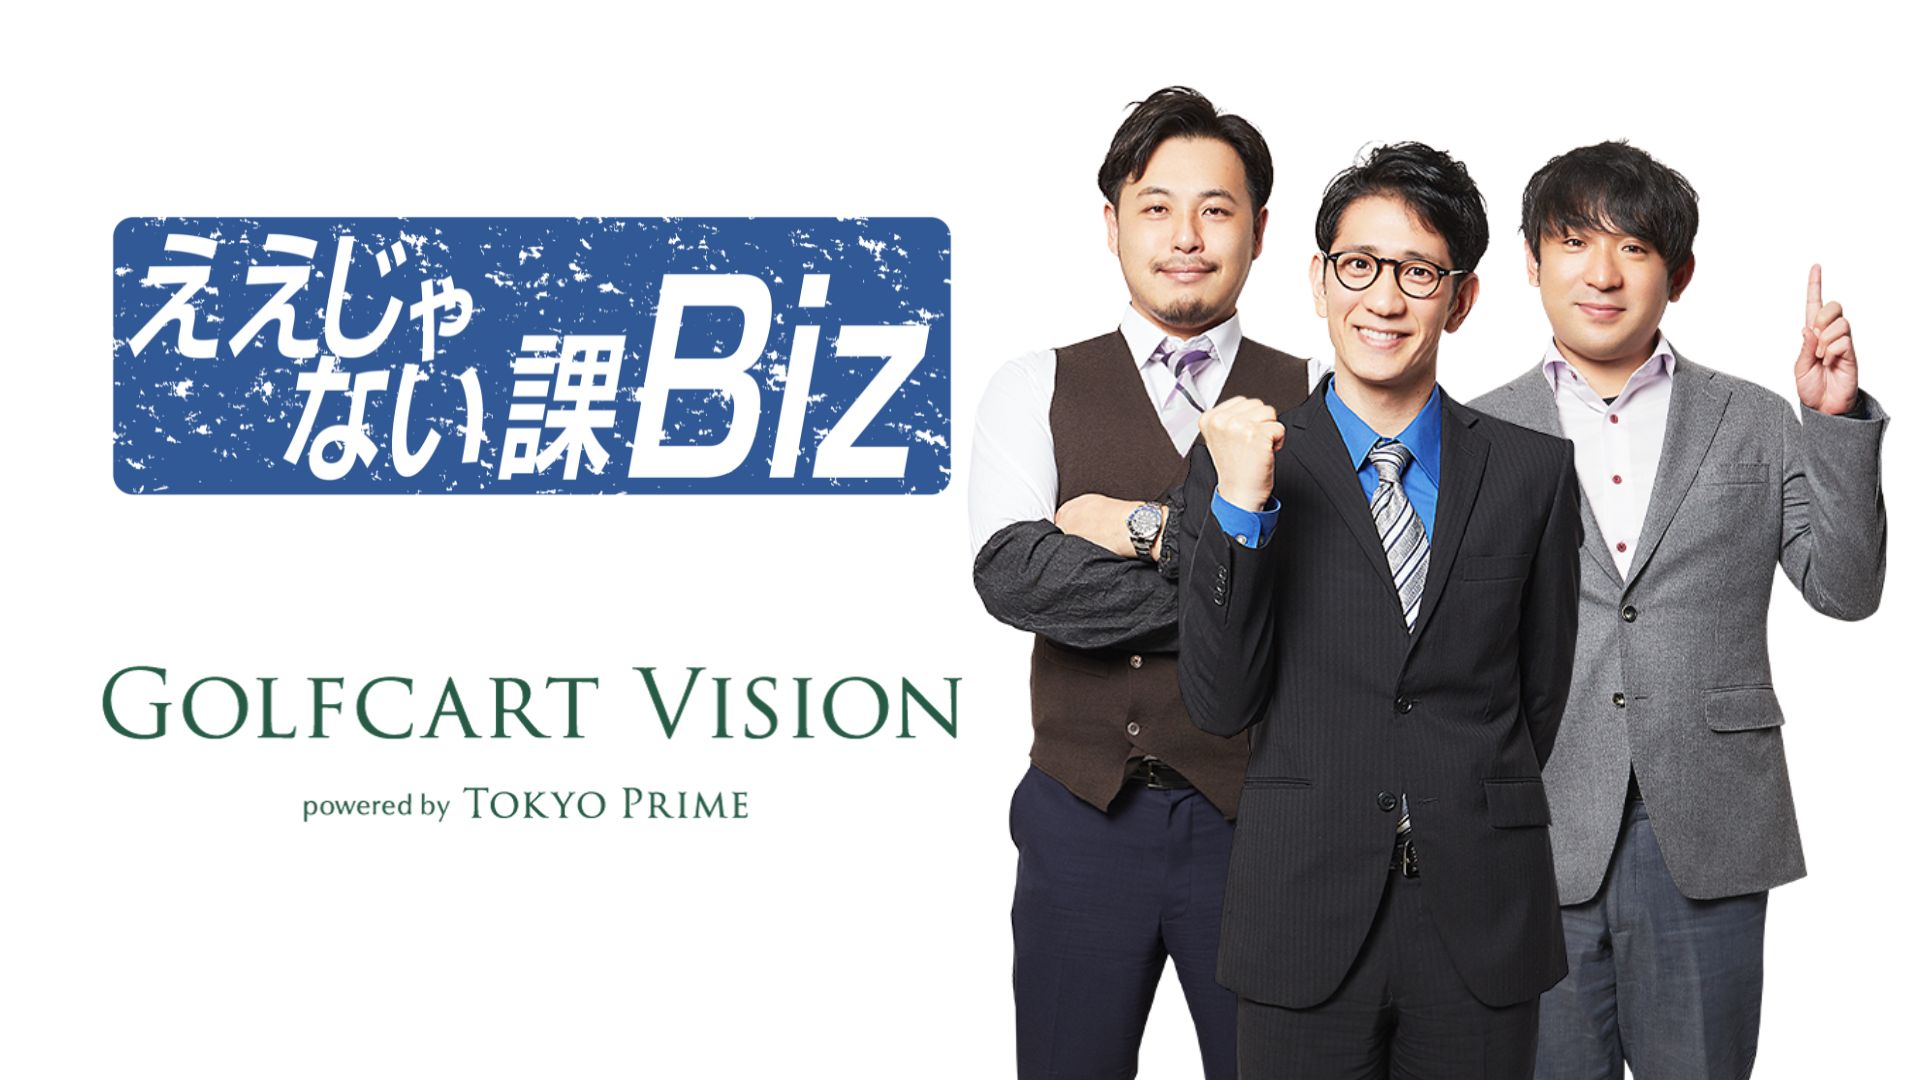 TOKYO MXのビジネス情報番組「ええじゃない課Biz」にて「Golfcart Vision®︎ powered by Tokyo Prime」が紹介されました！